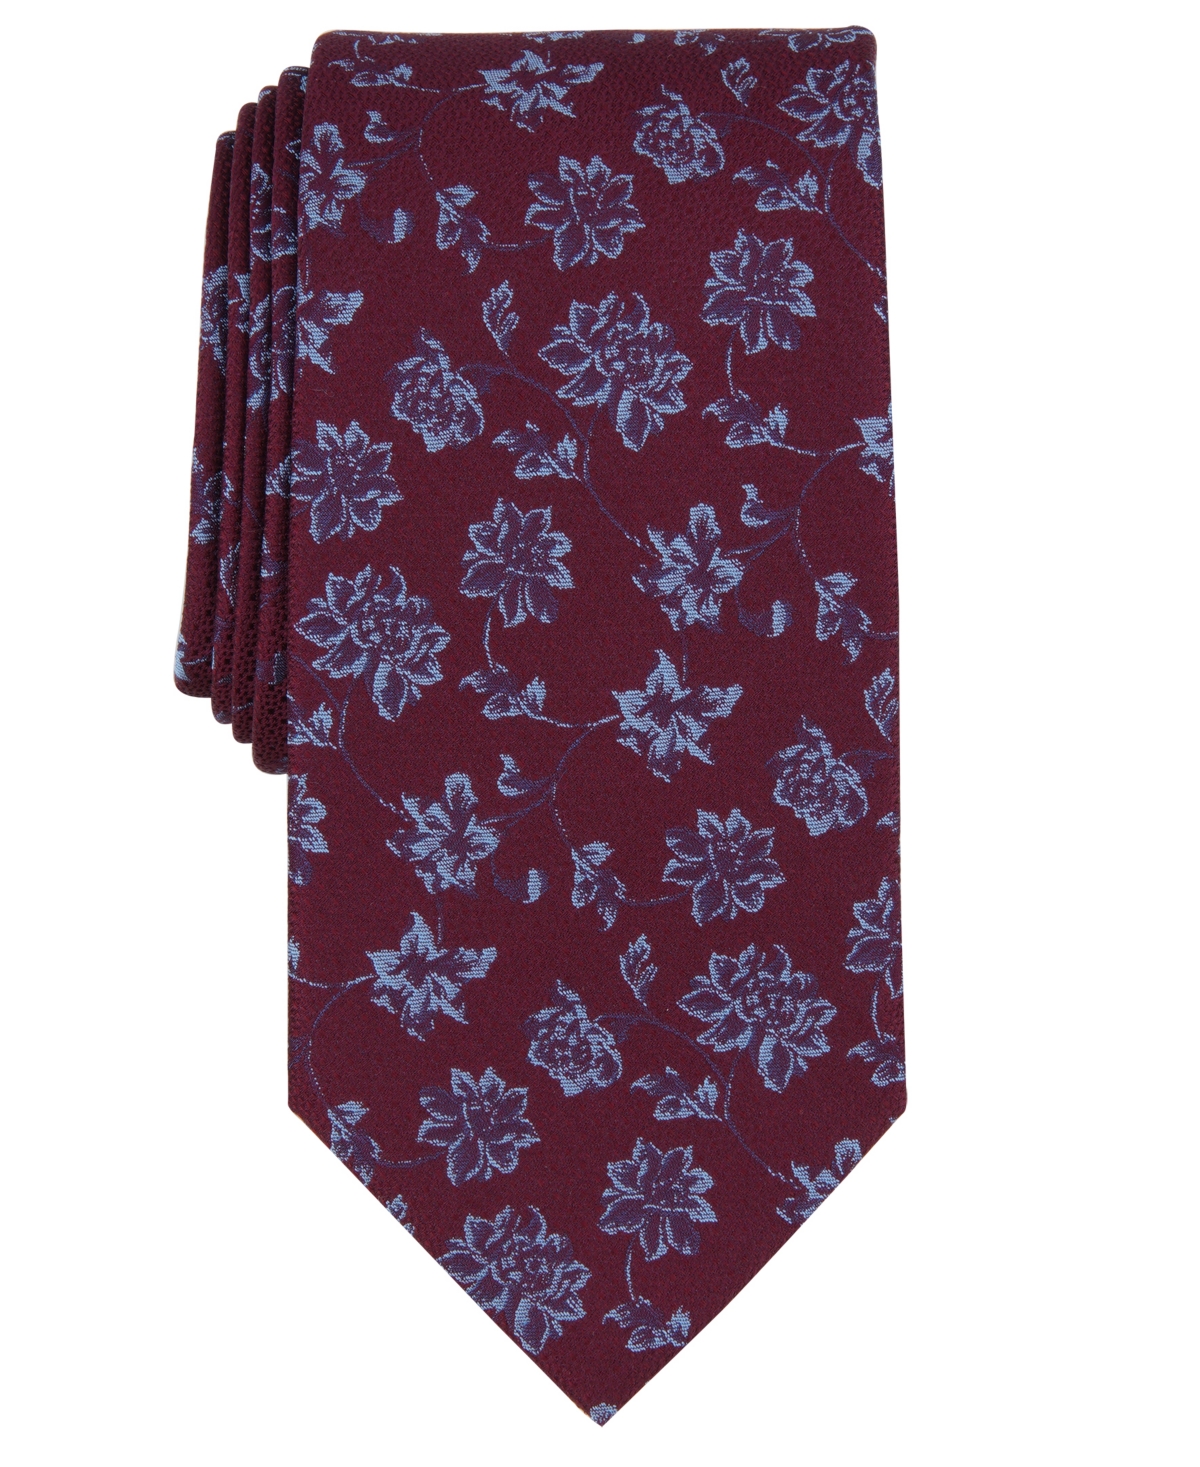 Michael Kors Men's Gegan Floral-print Tie In Burgundy